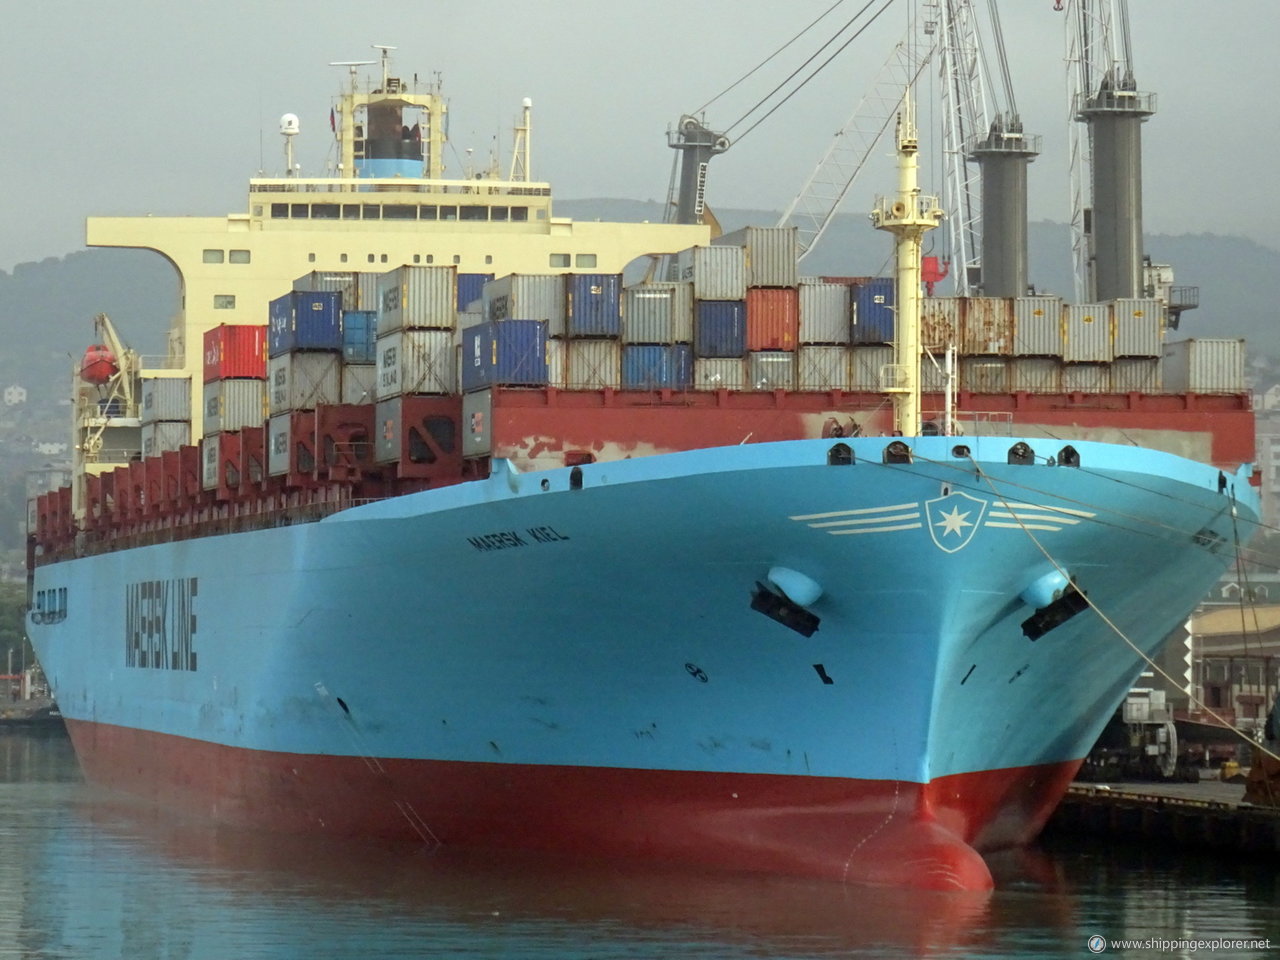 Maersk Kiel